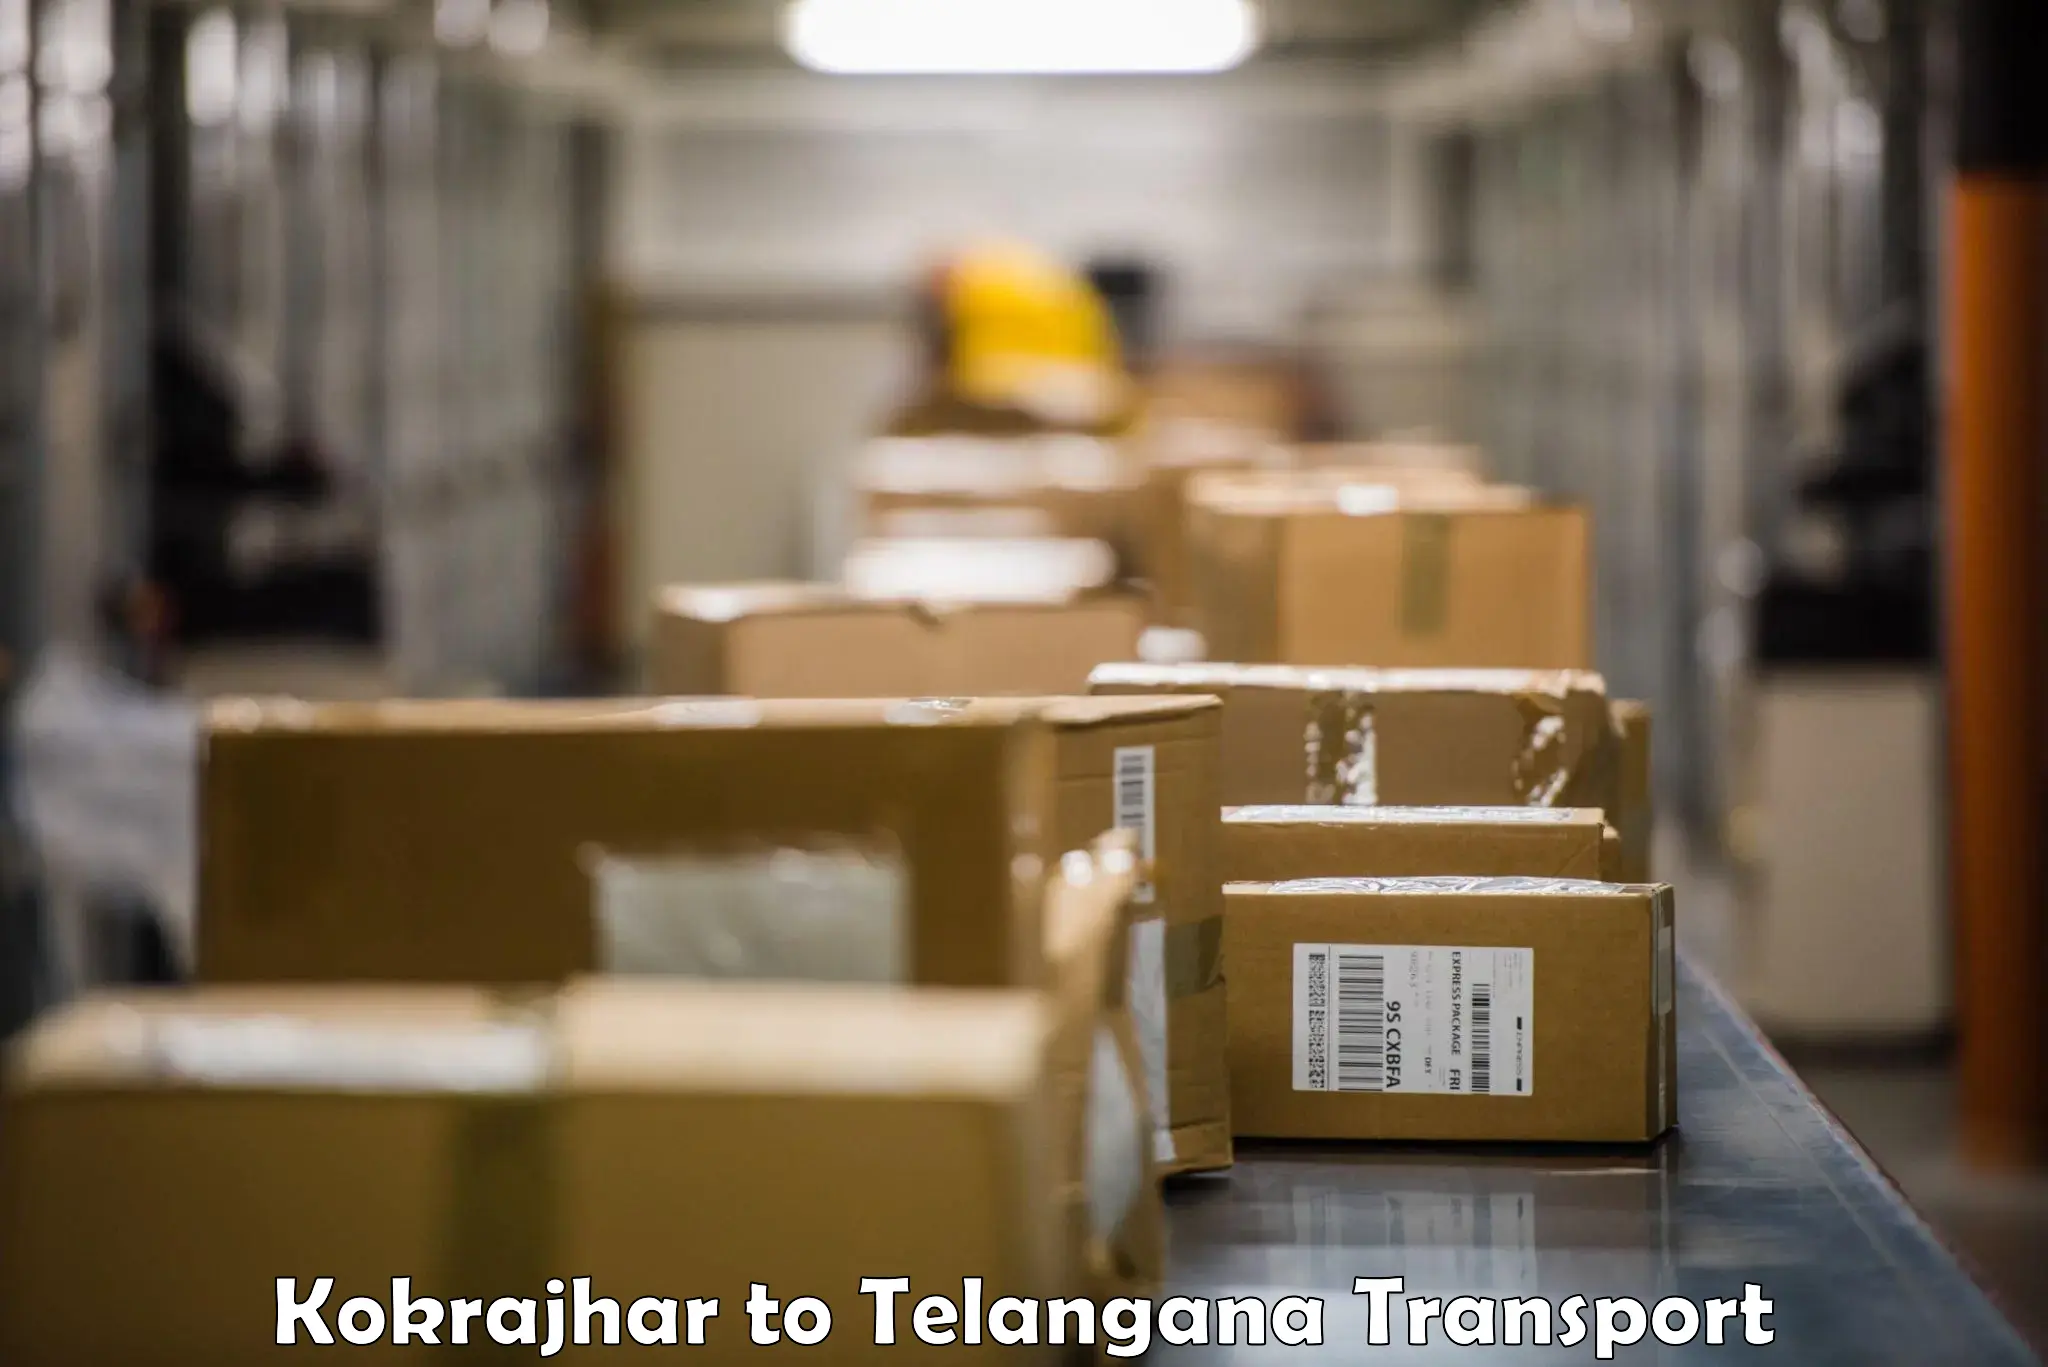 Furniture transport service Kokrajhar to Eligedu